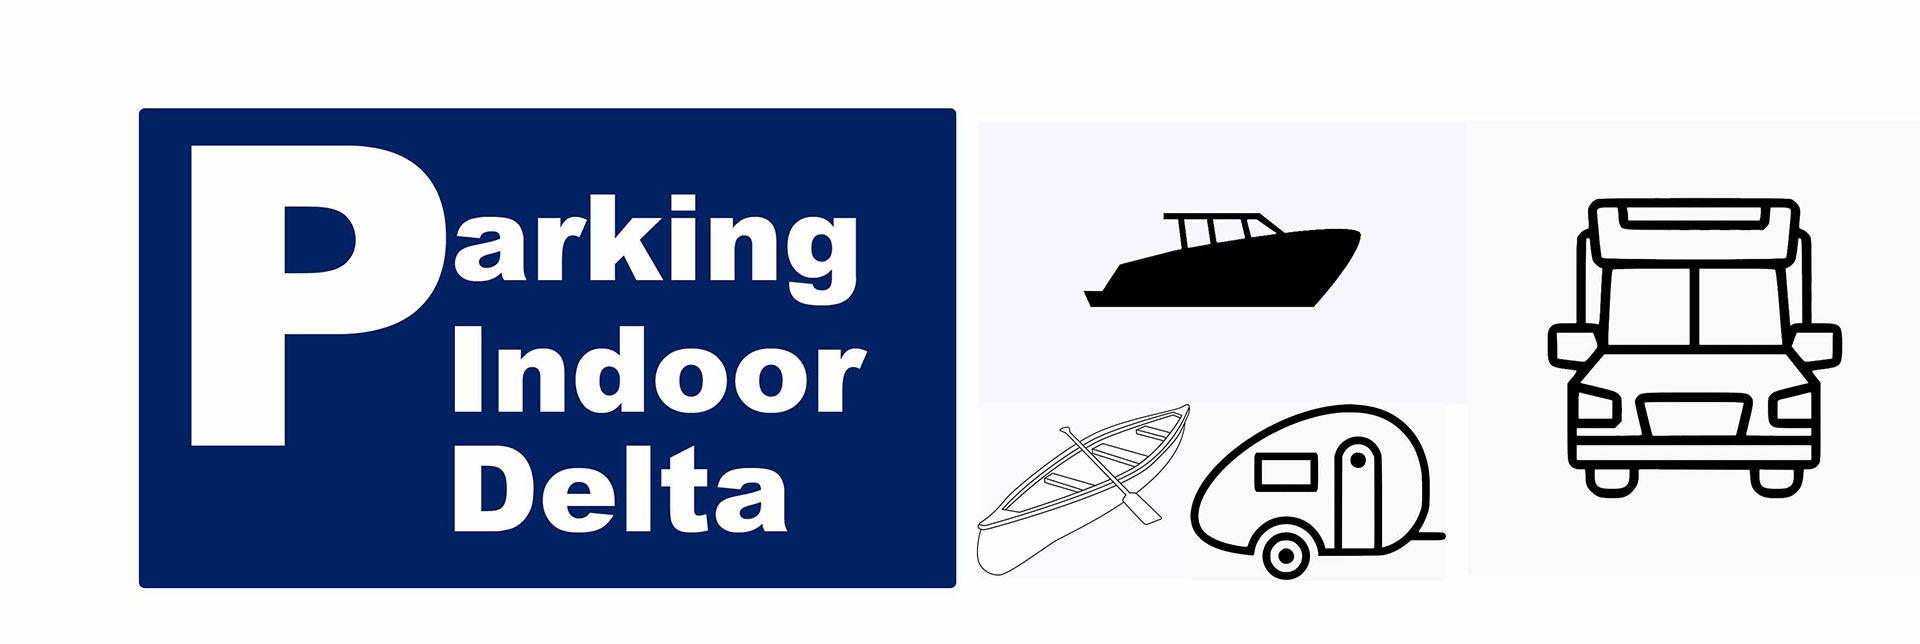 Parking preparado para el pupilaje de embarcaciones con remolque, motos nuticas, auto caravanas.